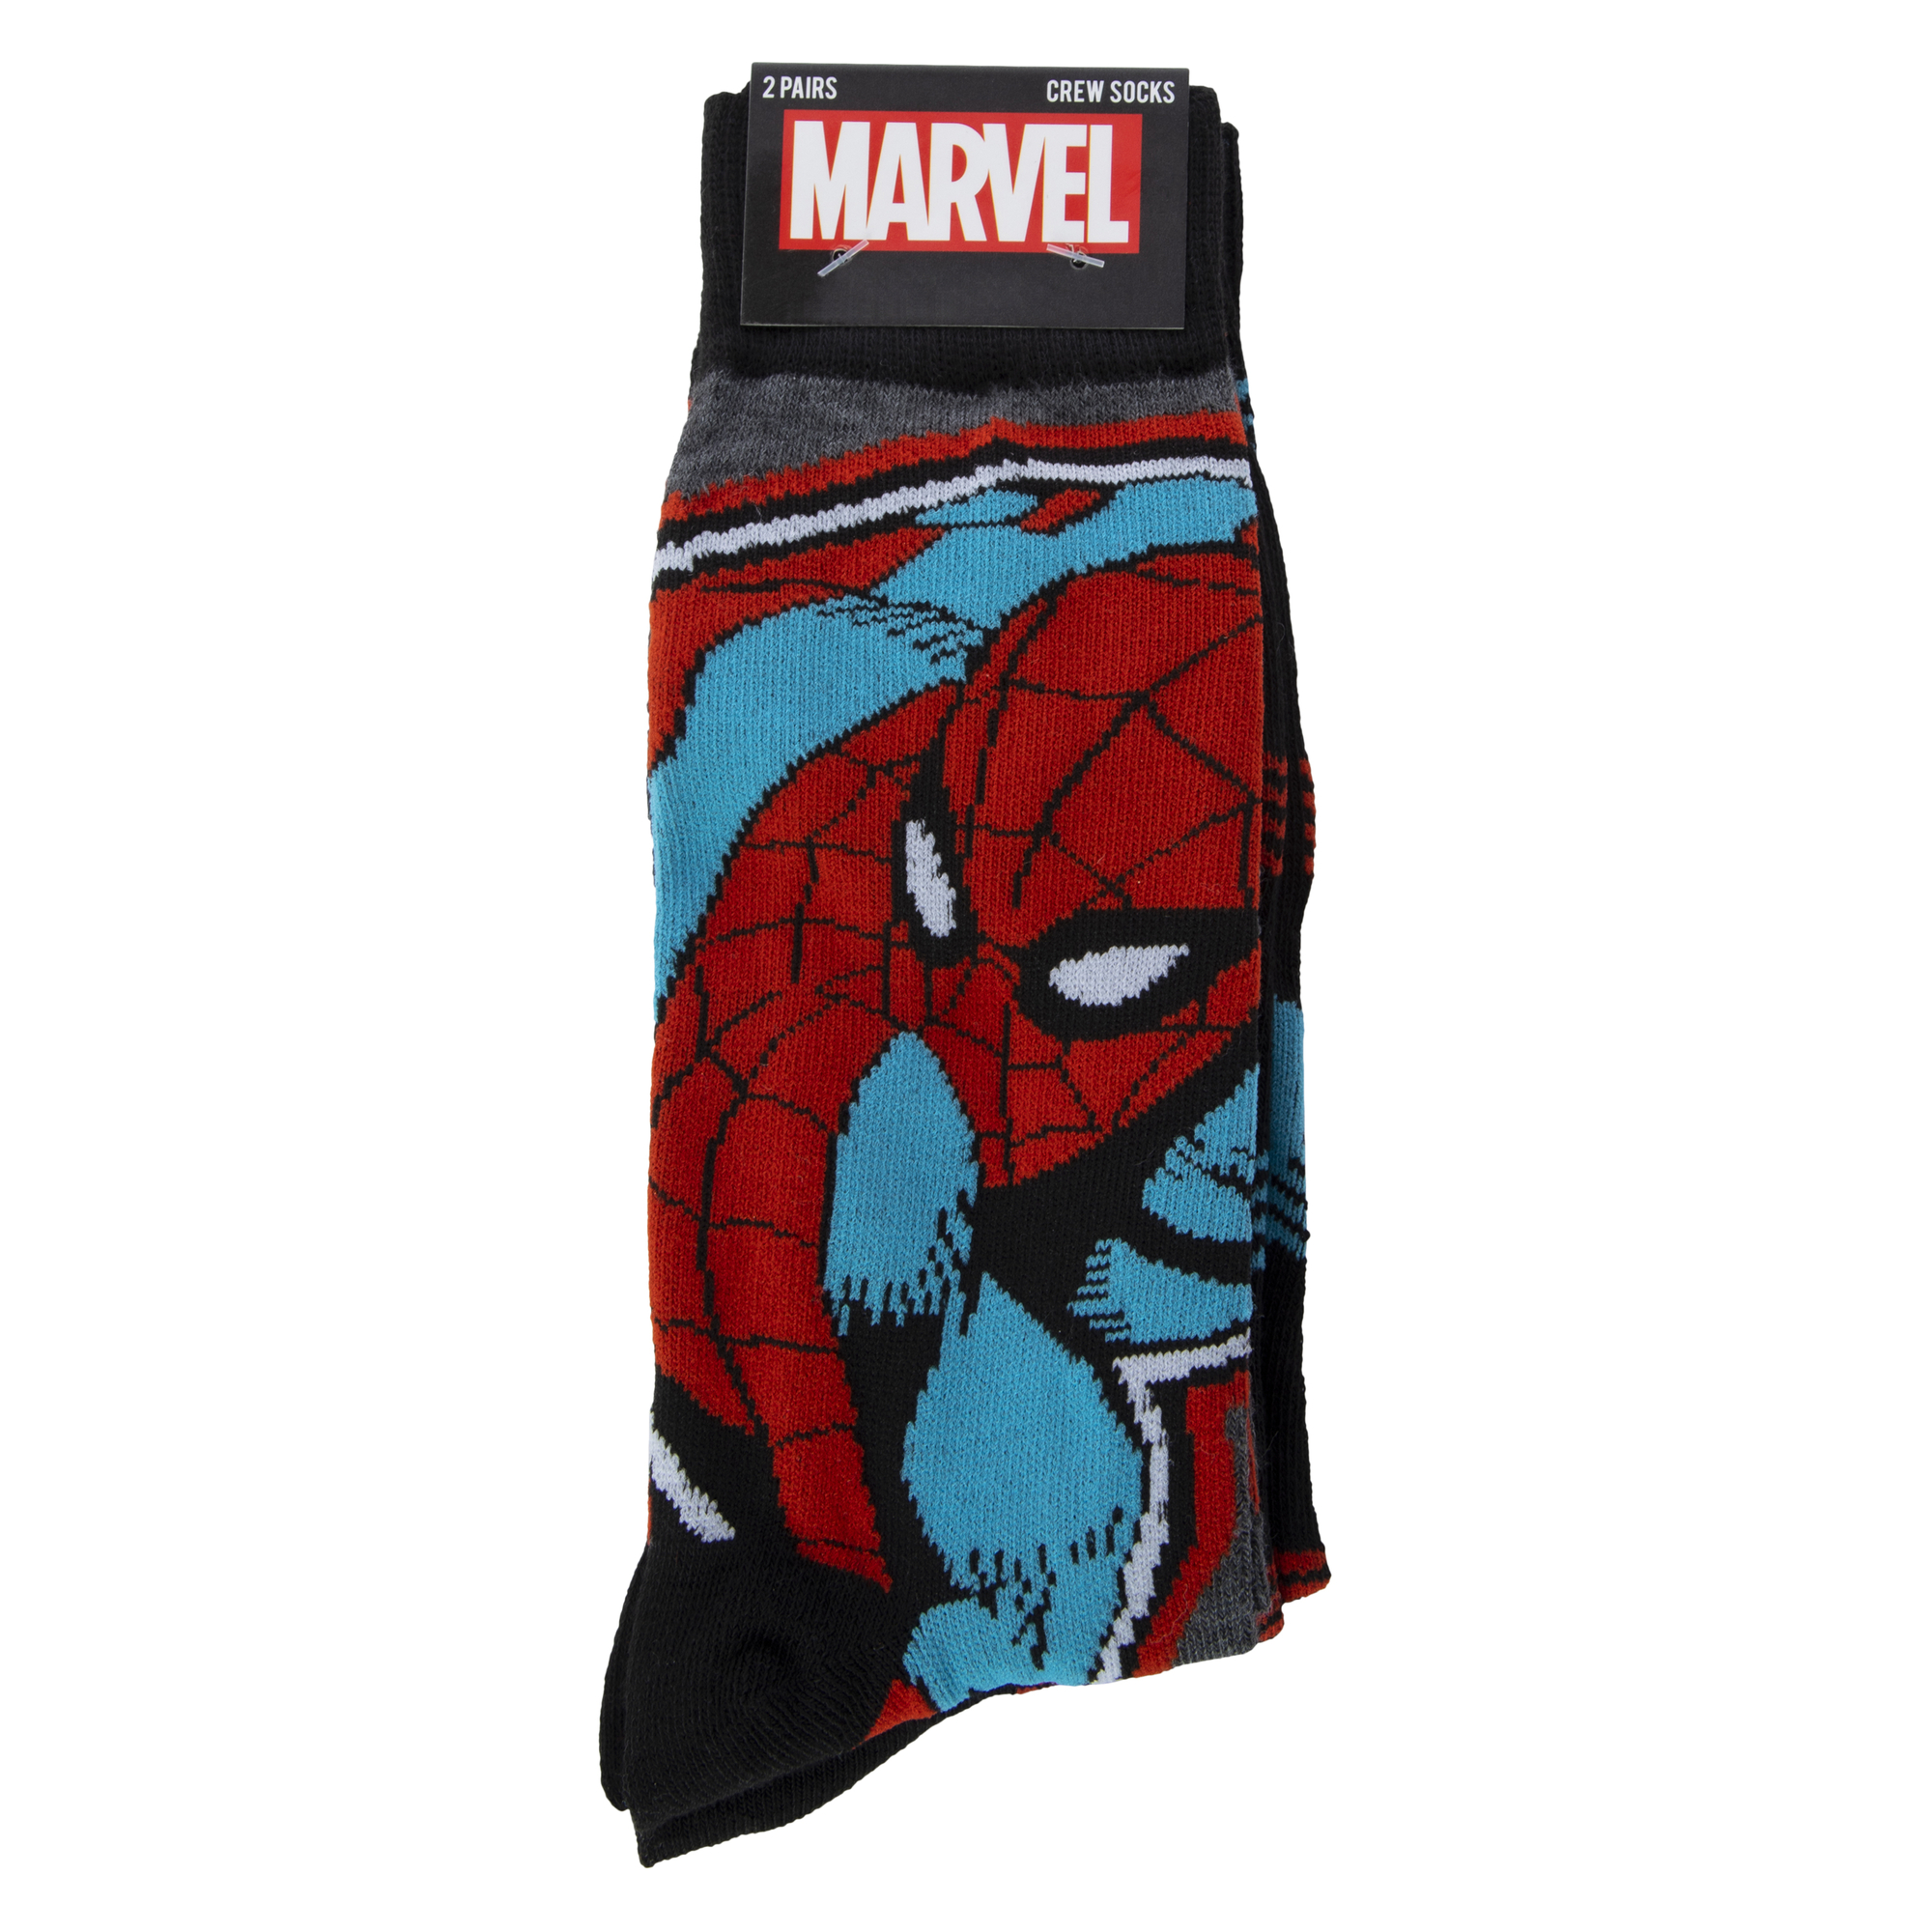 Marvel Spider-Man mens crew socks 2-pack